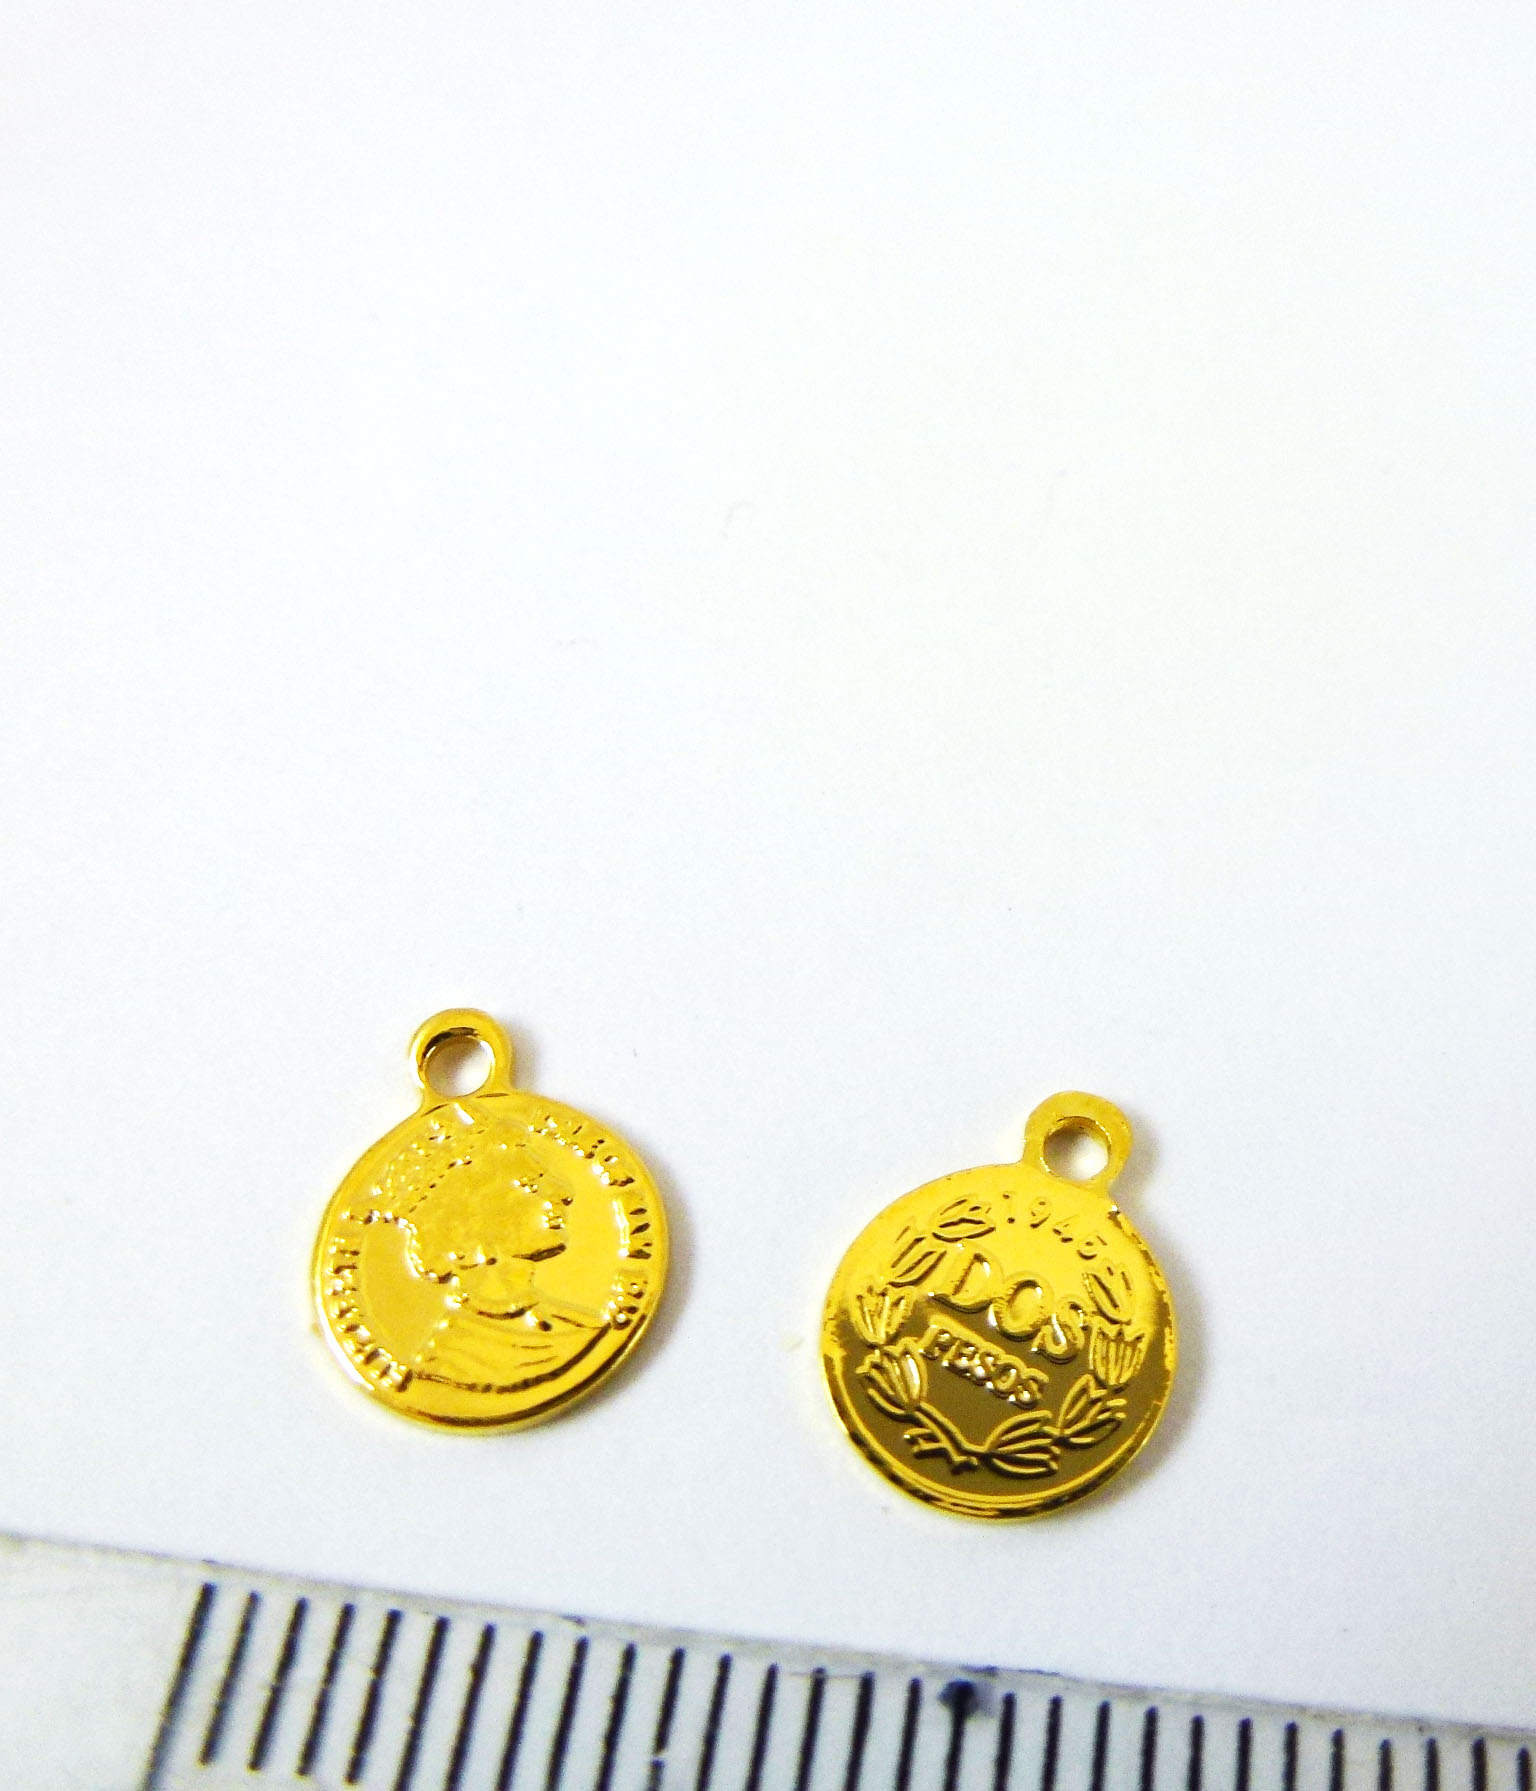 8mm銅鍍金色單孔美國錢幣